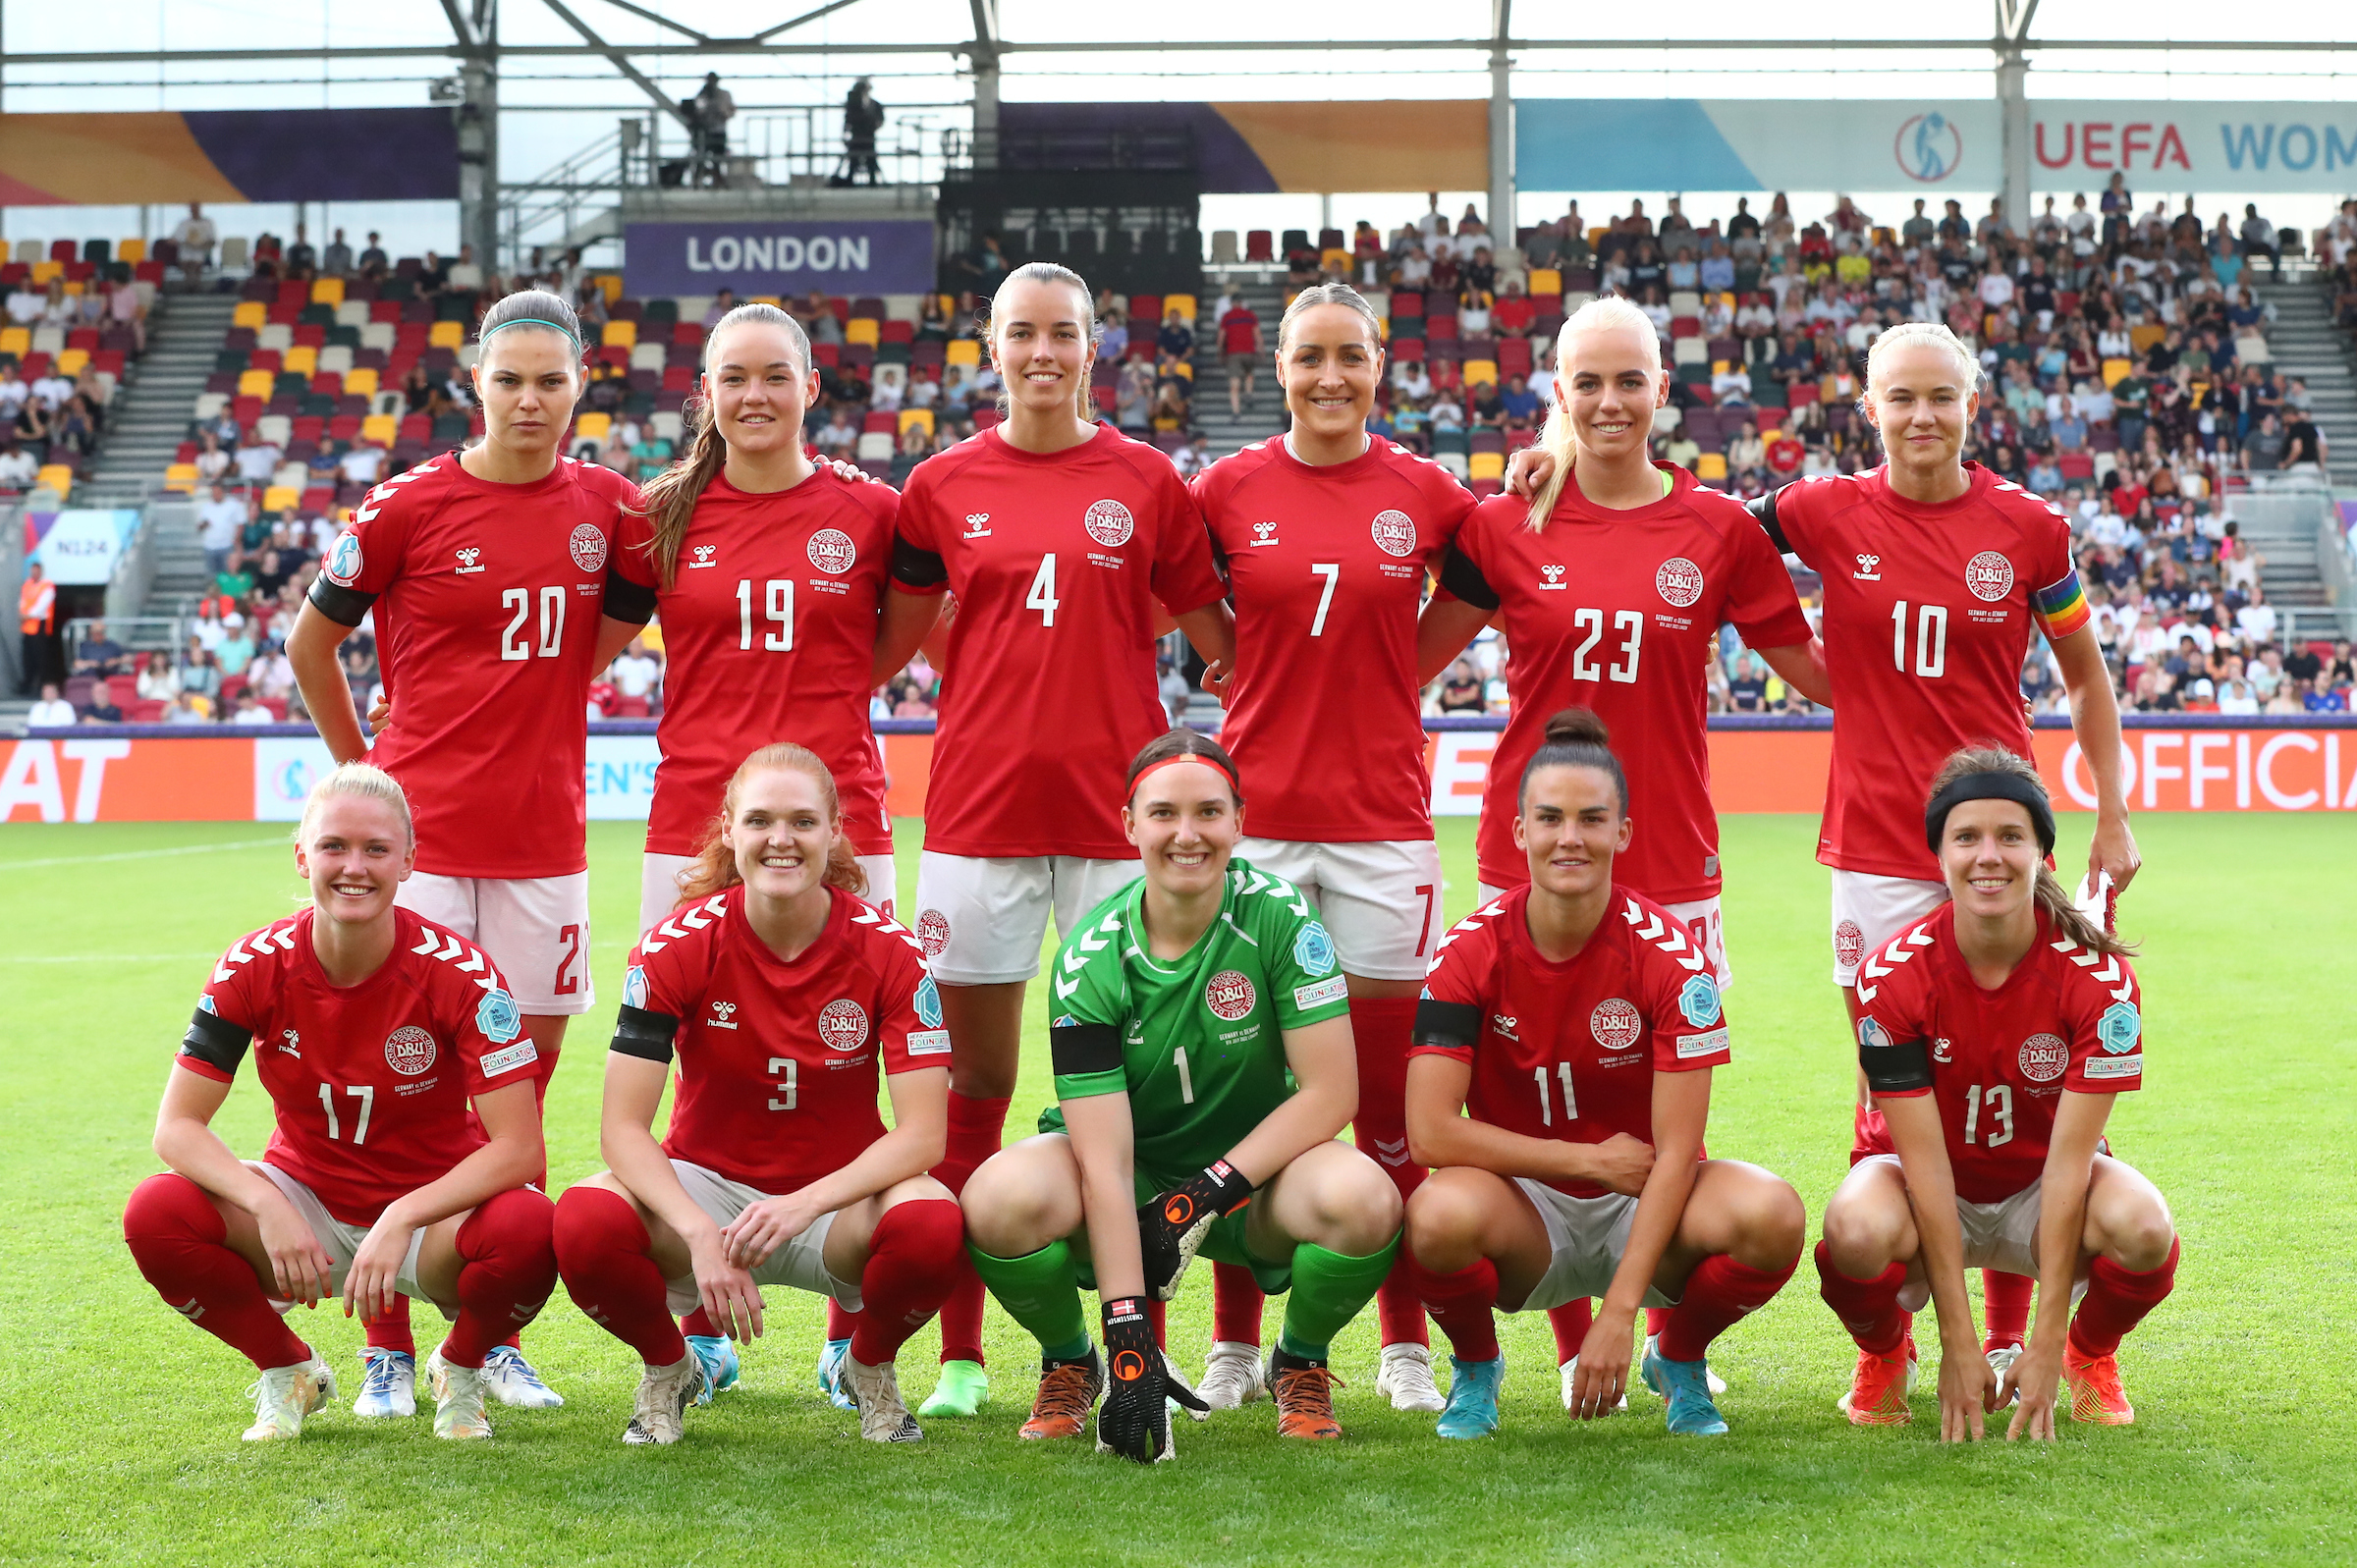 Hård EM-start for Danmarks fodboldkvinder. Taber stort - kvindesport.dk